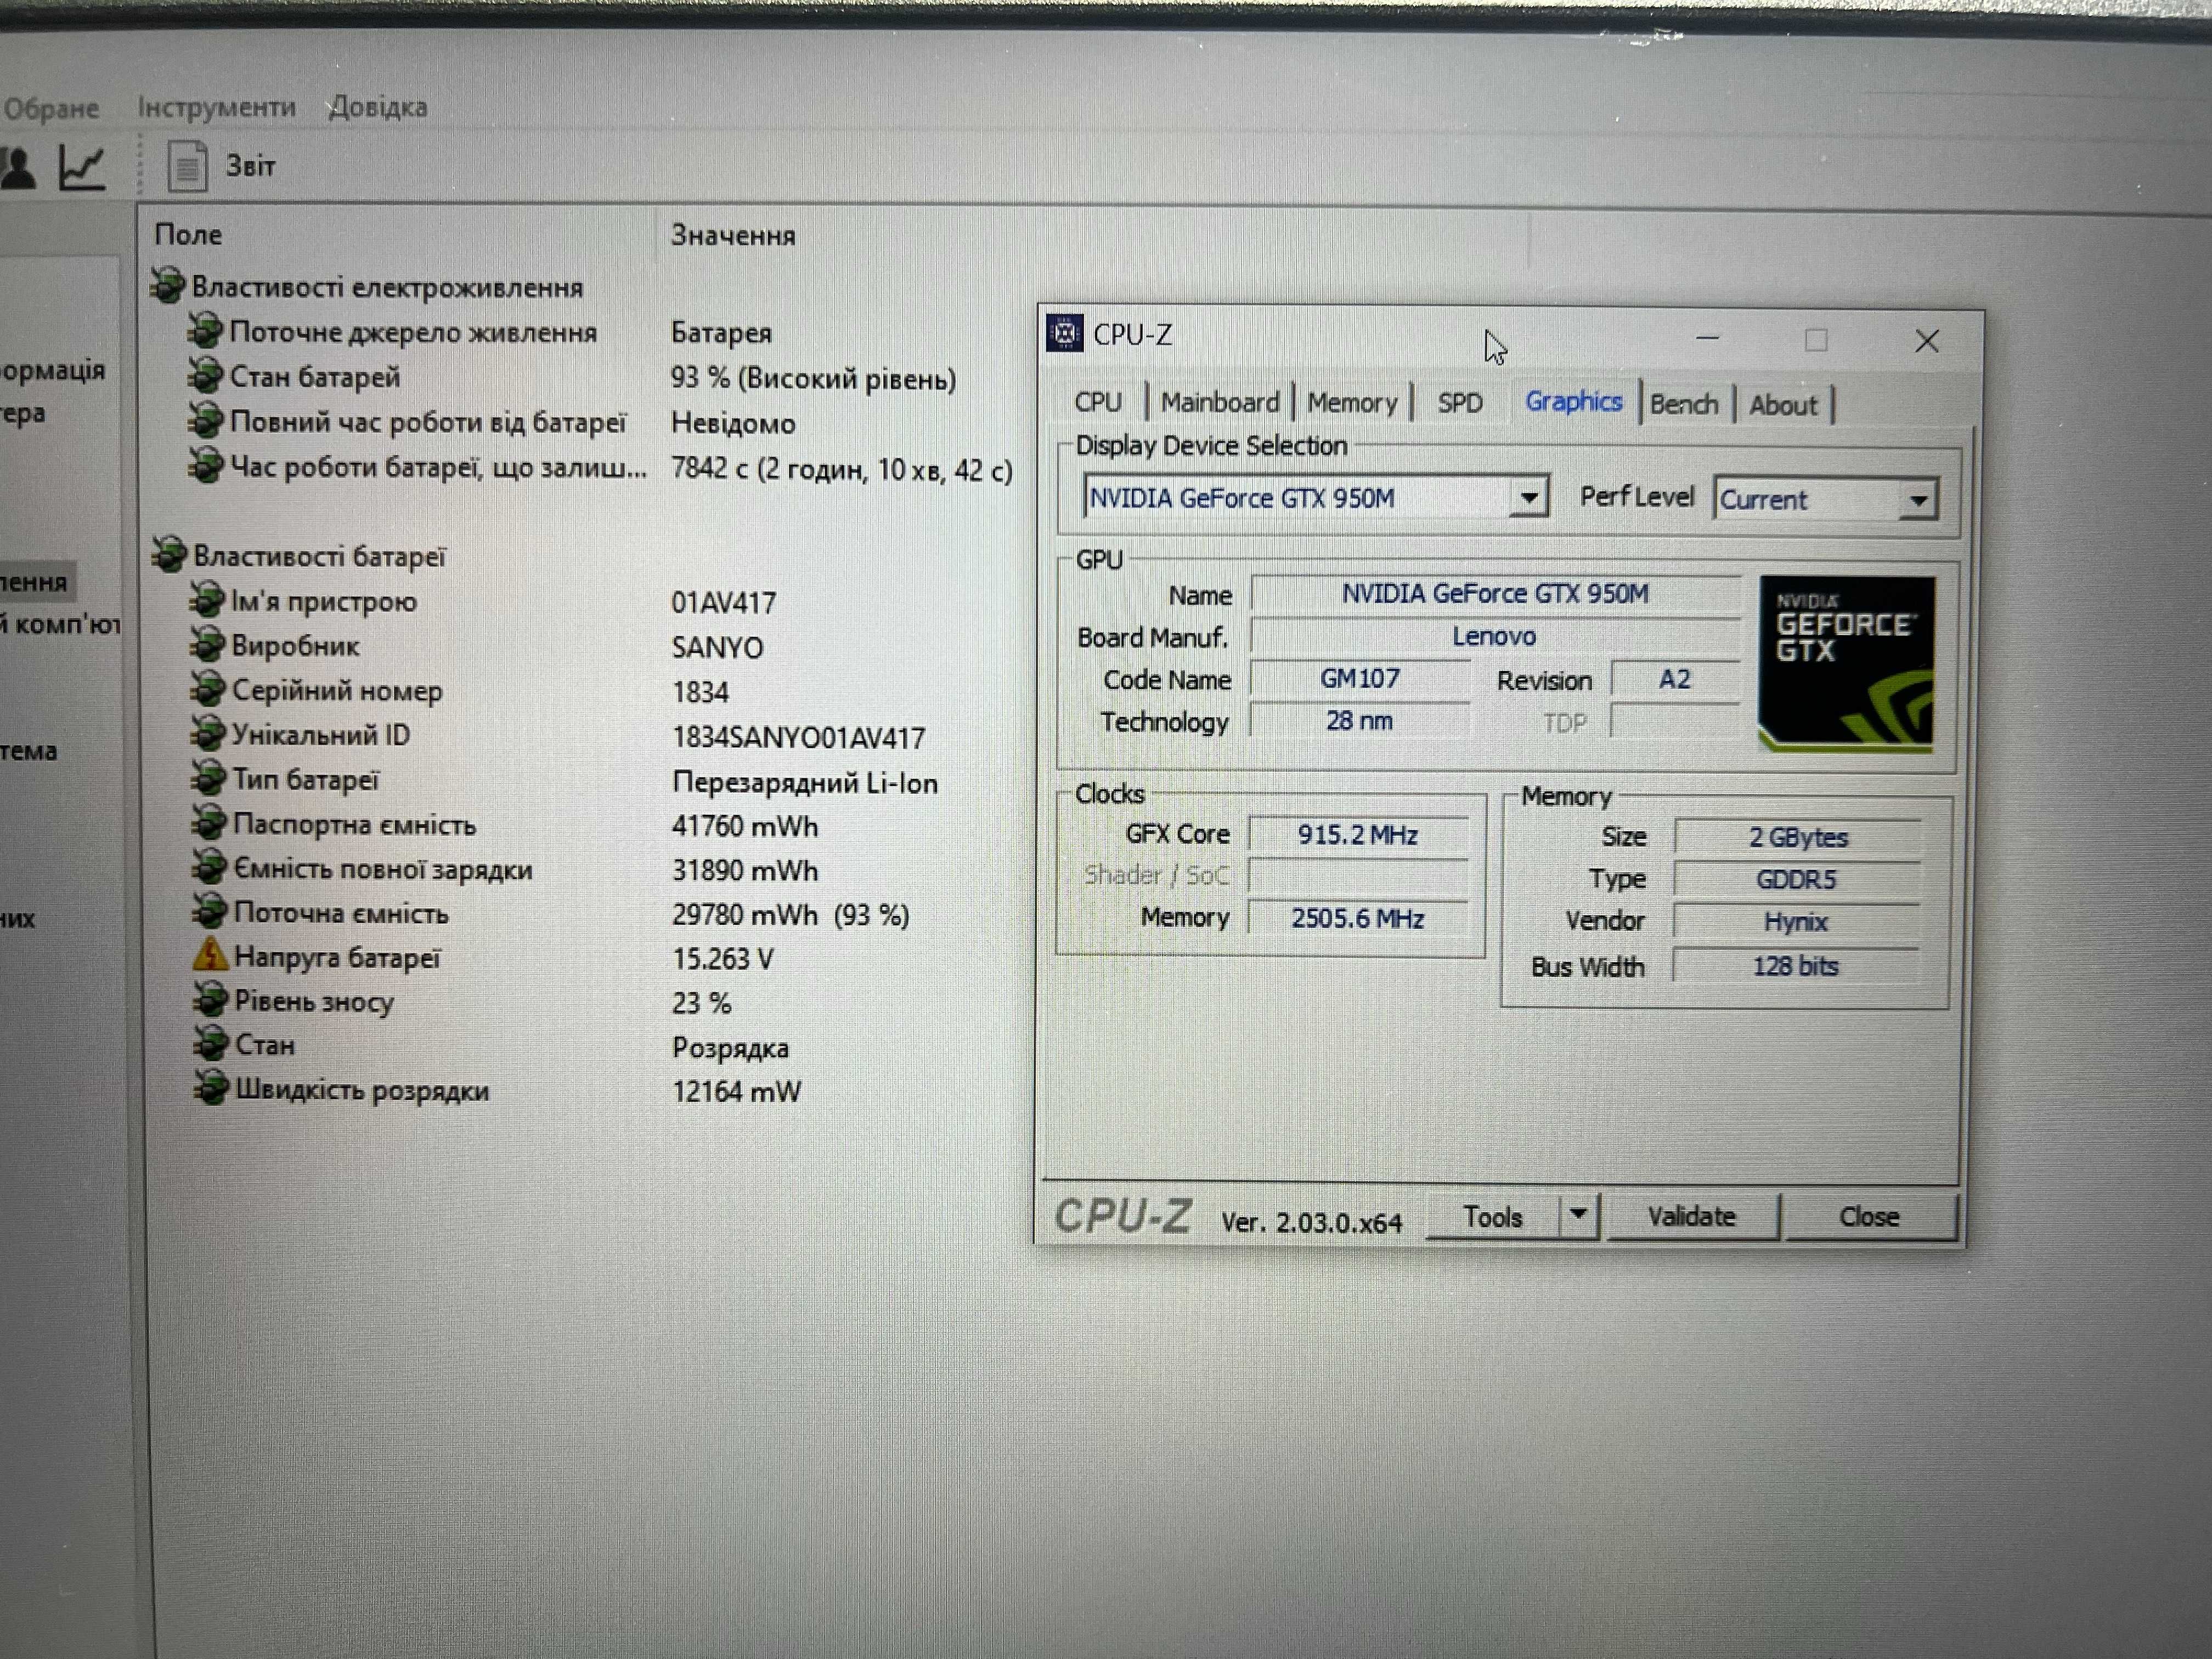 Lenovo ThinkPad E570/i7-7500U/8GB/SSD 240GB/nVidia GTX 950M,2GB/FHD